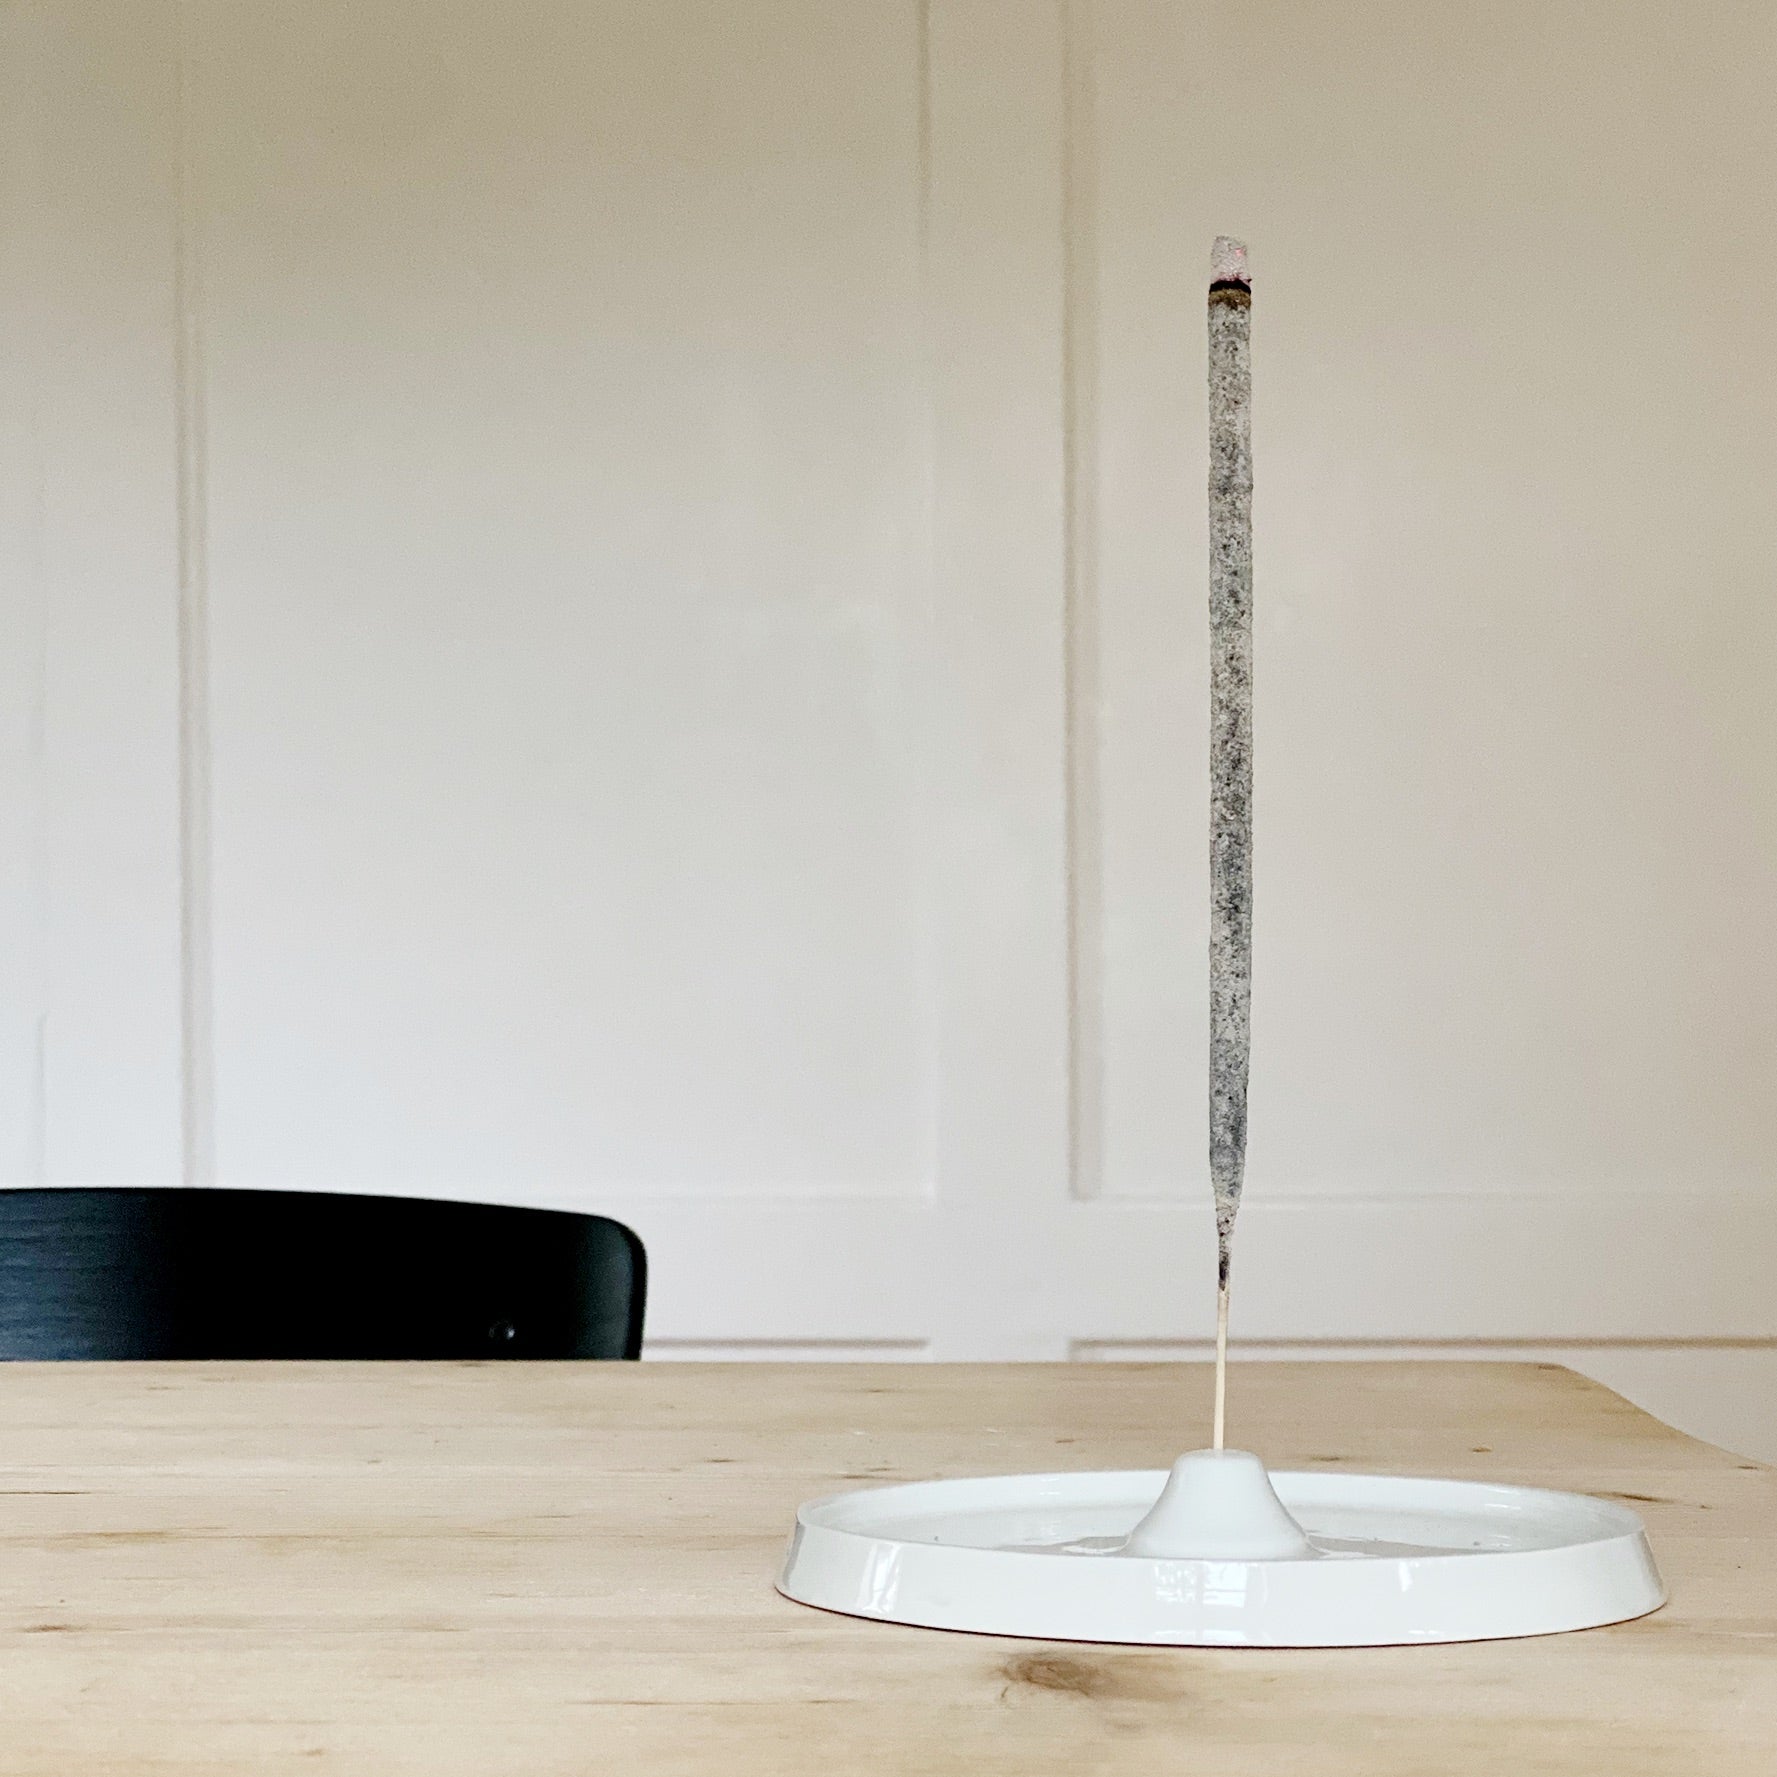 Räucherstäbchenhalter mit weissem Copal Räucherstäbchen auf einem Holztisch